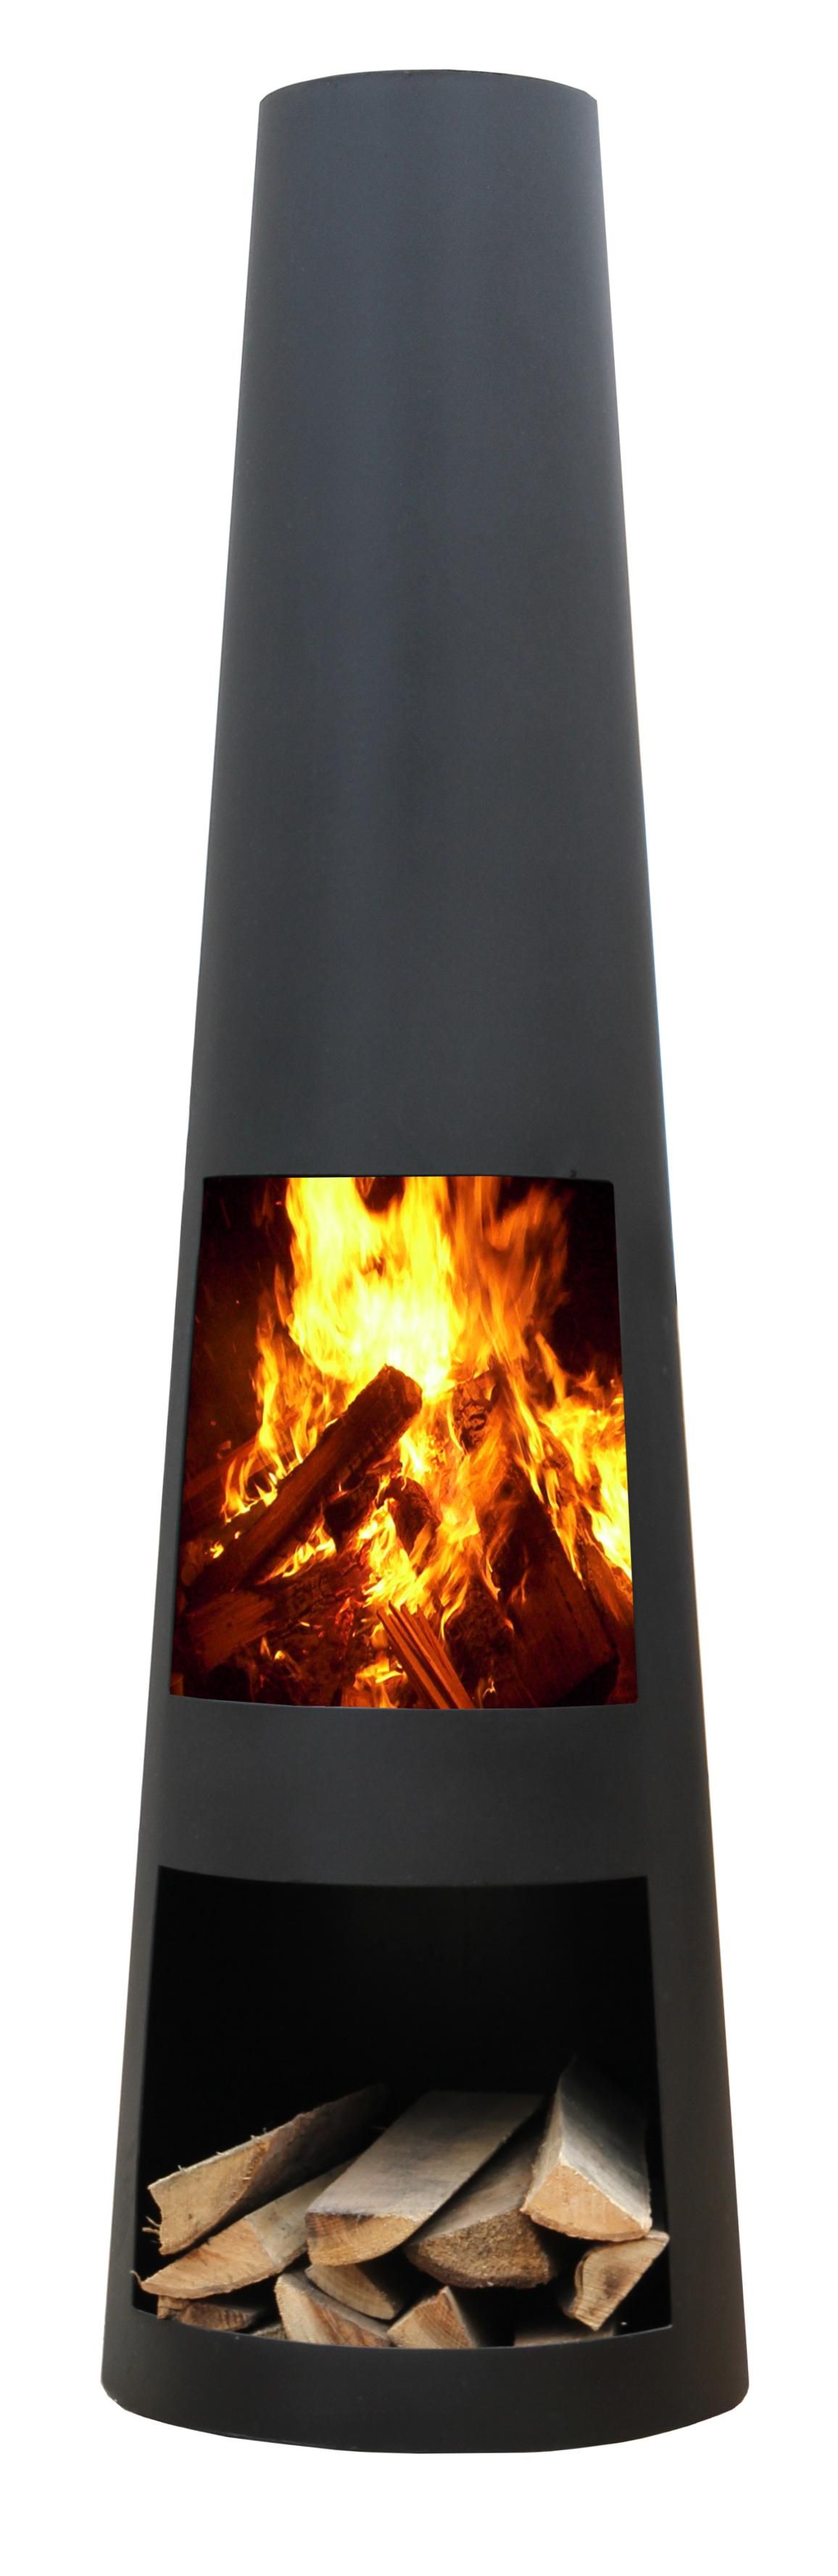 GardenMaxX Rengo Black Fireplace Firepit-online.com